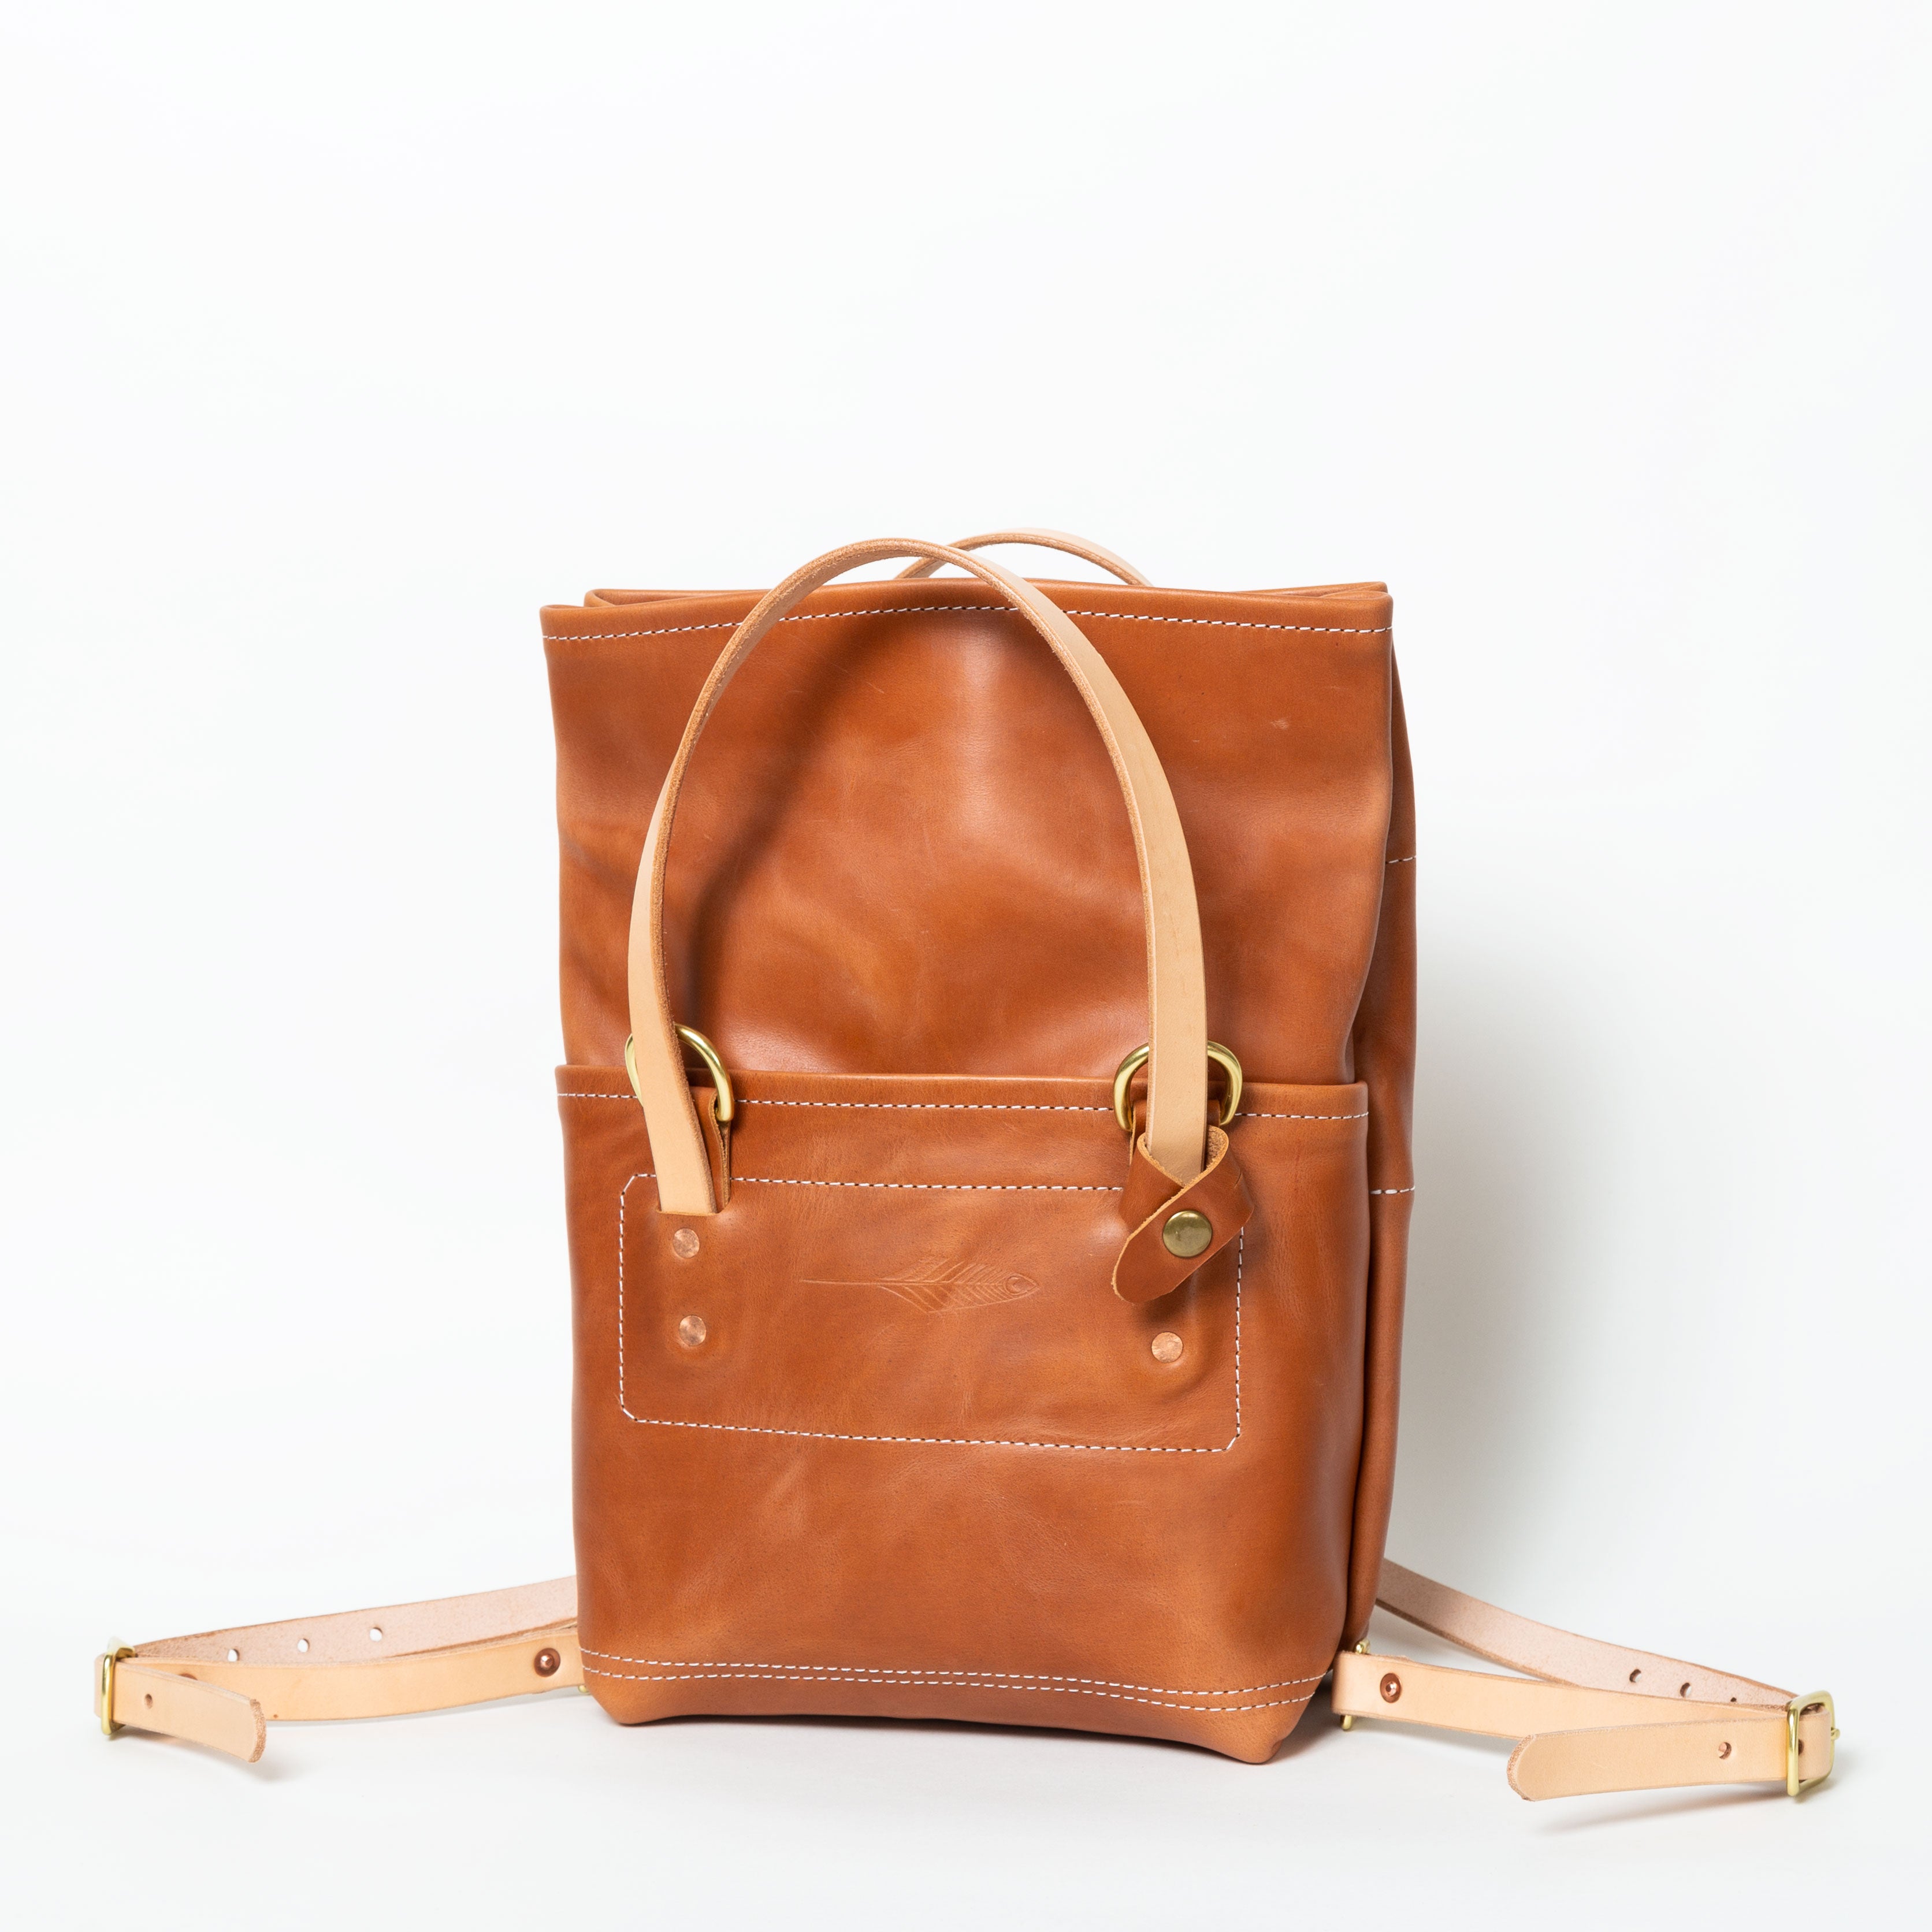 The Mini Backpack - Honey